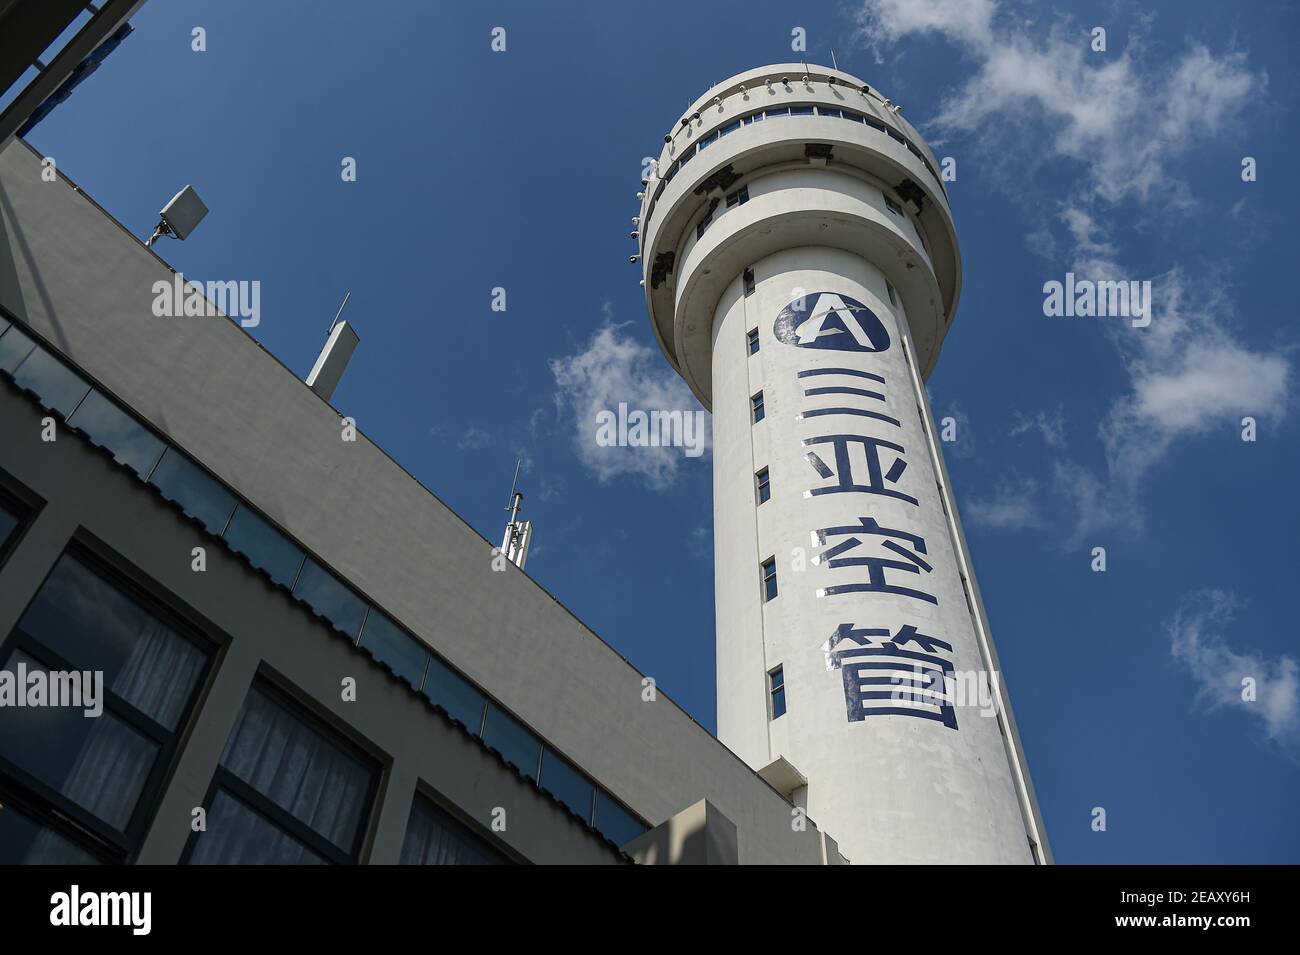 (210211) -- SANYA, le 11 février 2021 (Xinhua) -- la tour de contrôle de la circulation aérienne de Sanya est photographiée à Sanya, dans la province de Hainan, au sud de la Chine, le 28 janvier 2021. Hong Yuan, 29 ans, est un contrôleur de la circulation aérienne à la tour de contrôle de la circulation aérienne de Sanya. En tant que contrôleur de la circulation aérienne, Hong est responsable de la navigation aérienne, du guidage des pilotes pendant le décollage et l'atterrissage et de la surveillance des avions lorsqu'ils voyagent dans le ciel. Ce travail exige une grande attention. Les membres du personnel sont donc censés prendre une pause toutes les deux heures pour se remettre du travail intense. Au cours de l'année dernière, le trafic aérien contro Banque D'Images